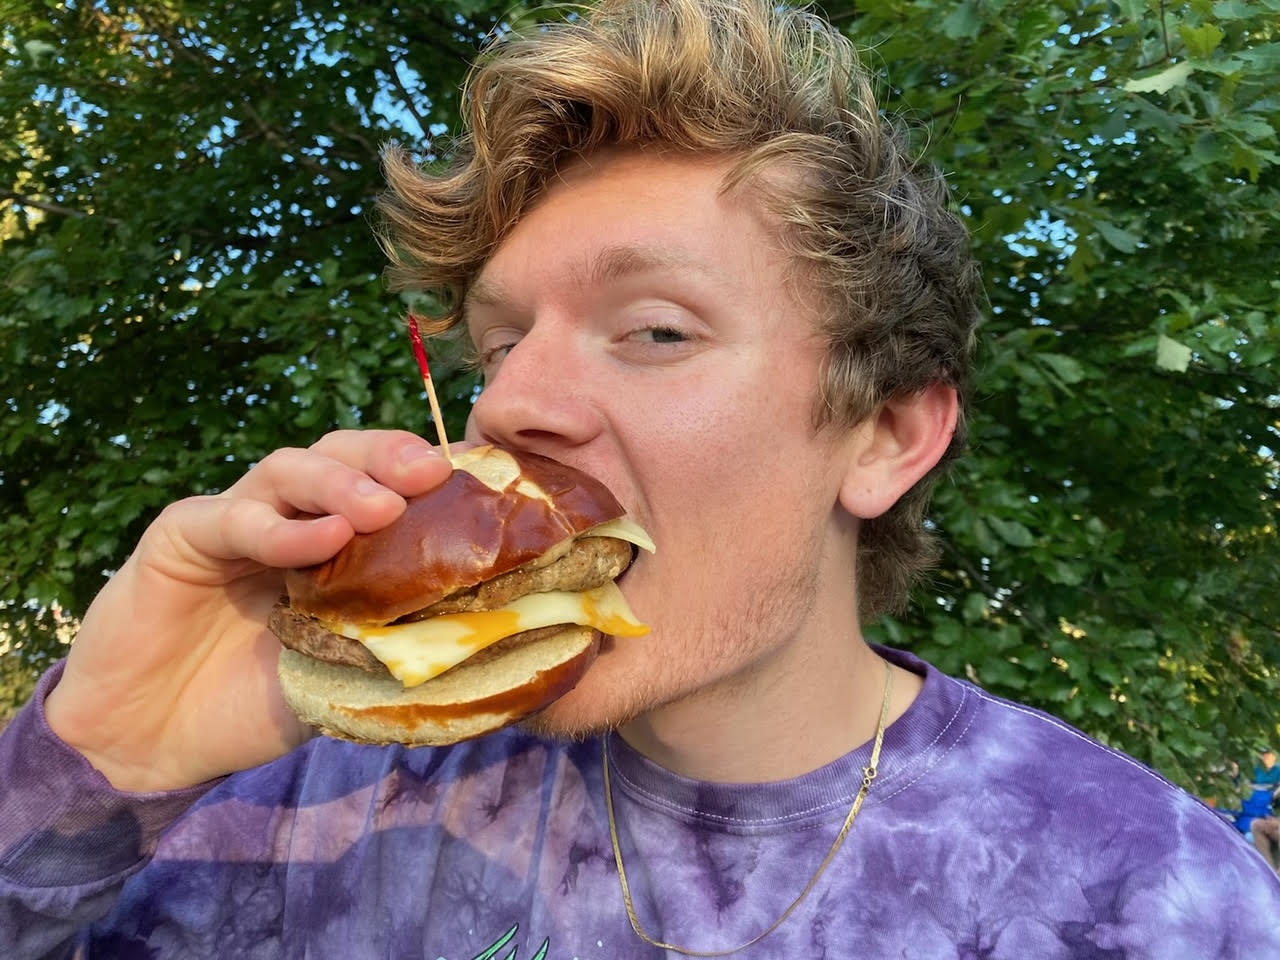 Guy eating brat burger